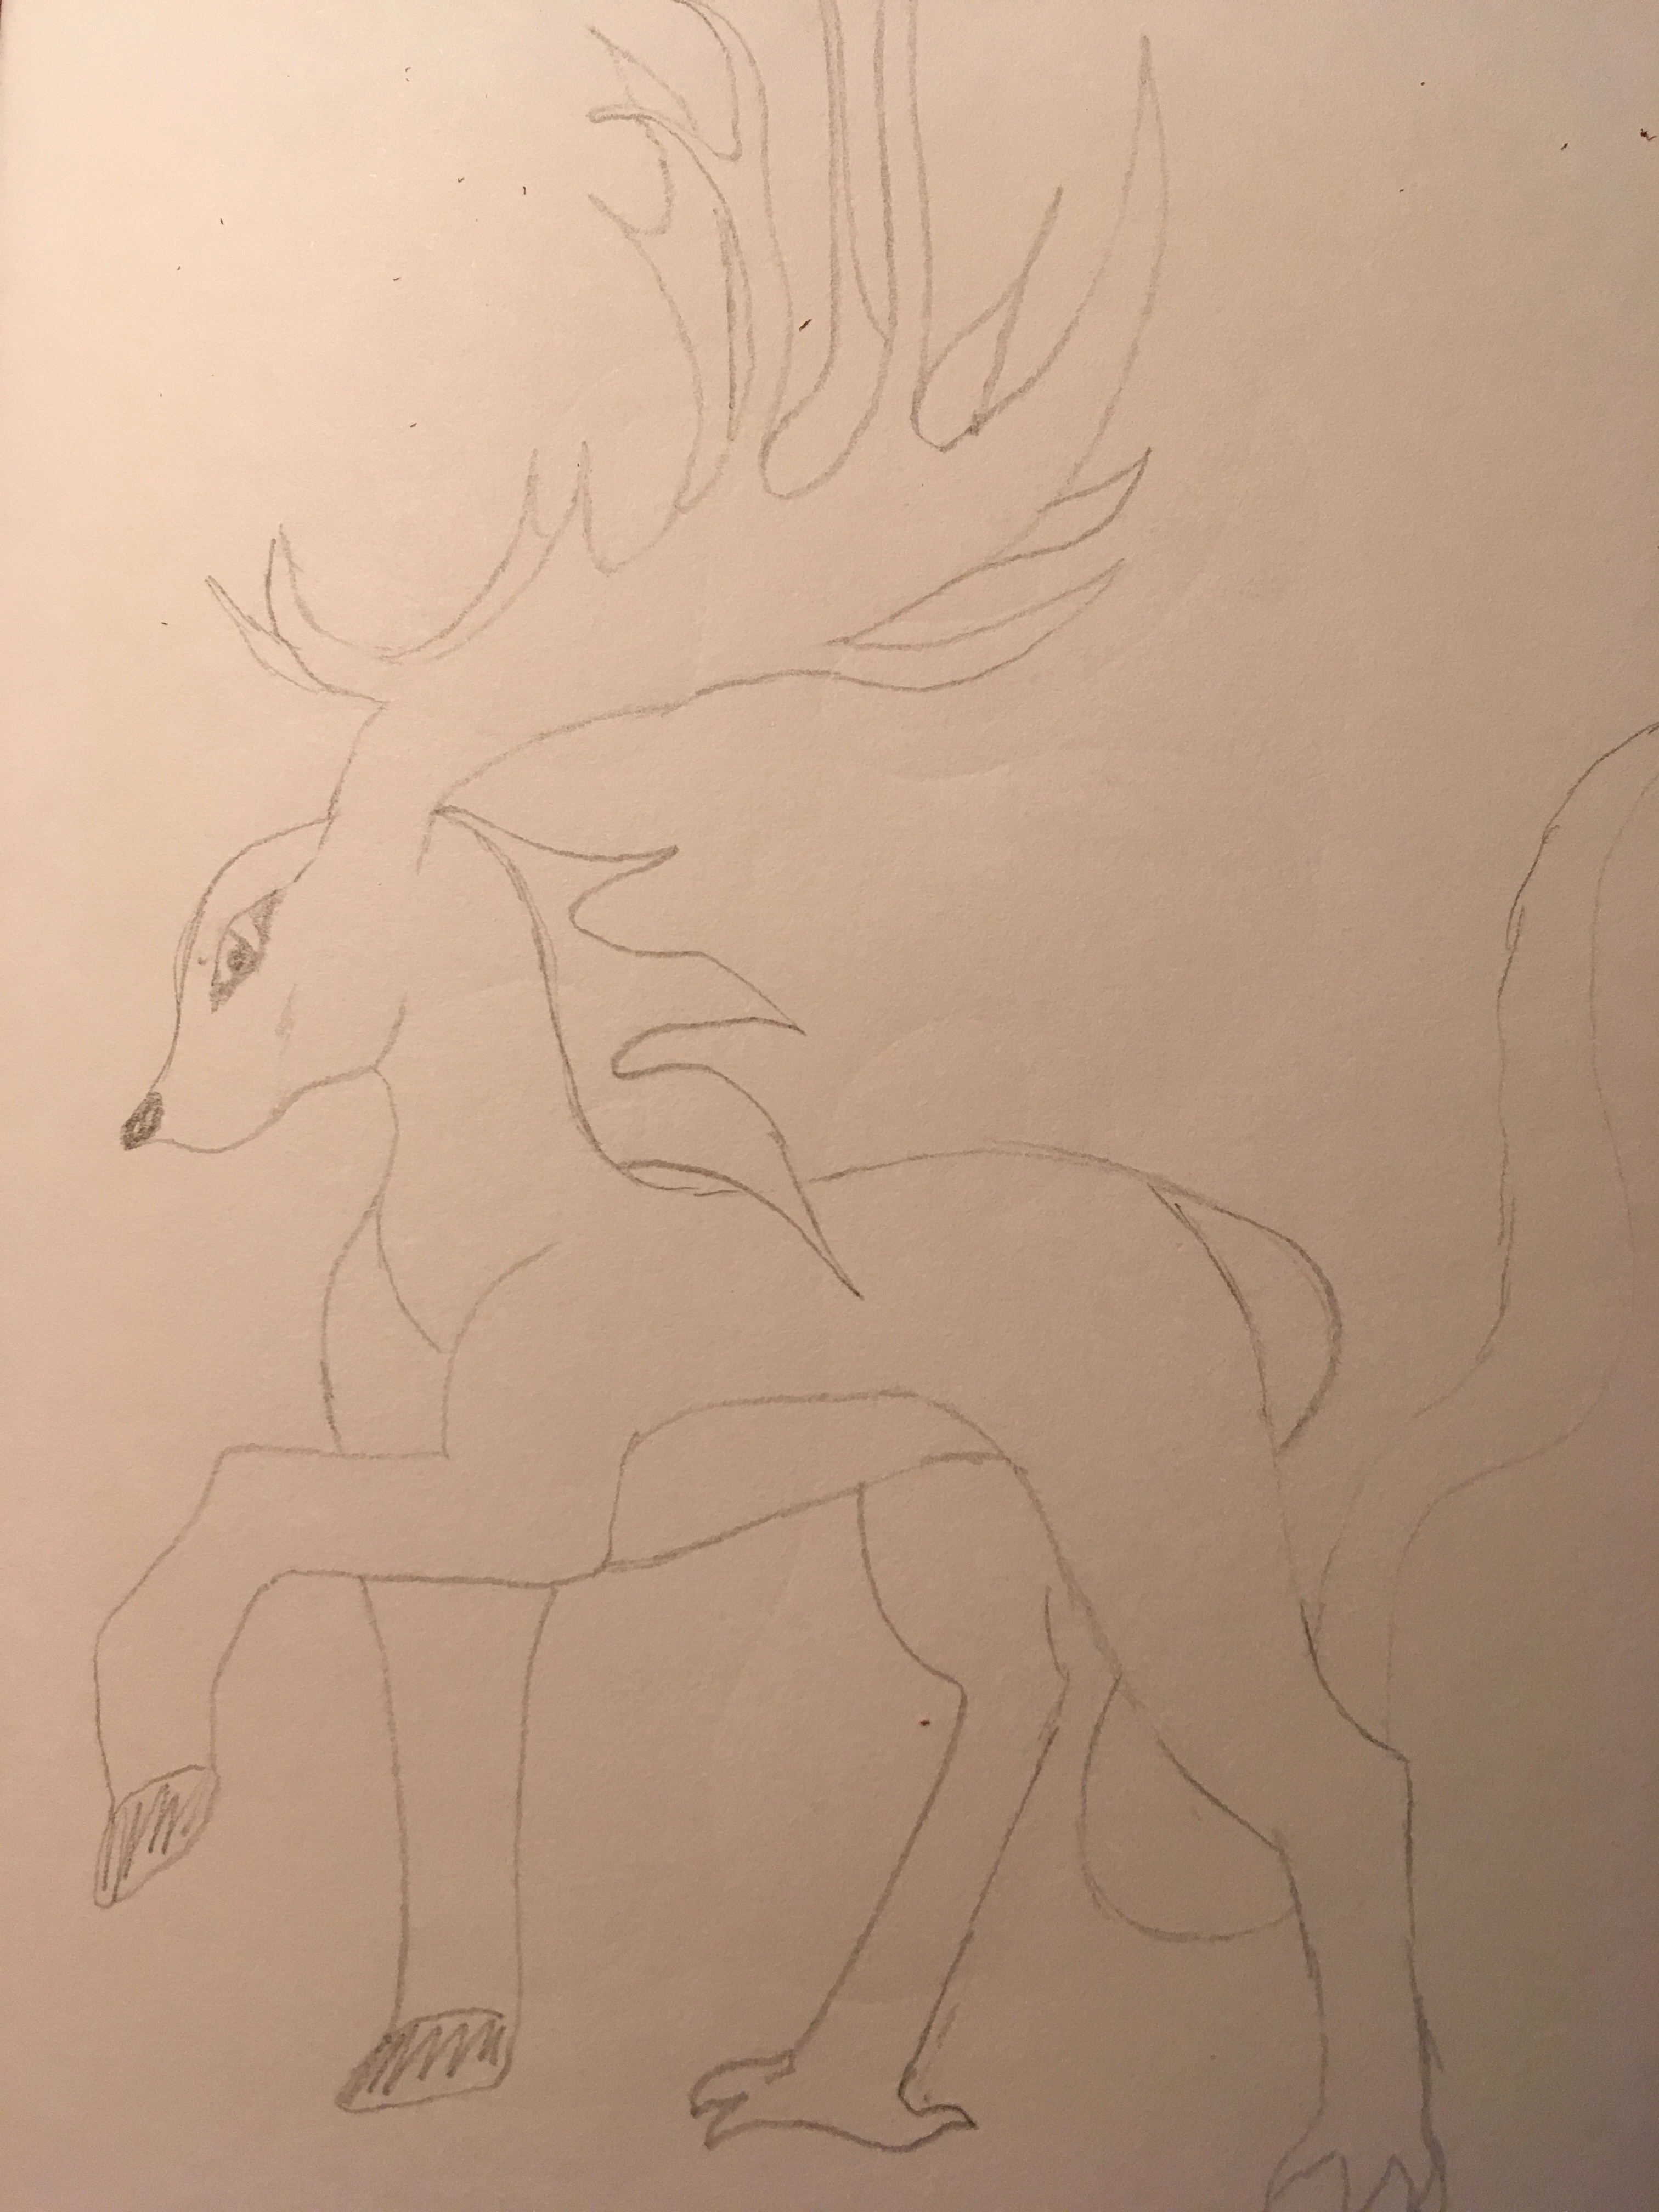 Deer dragon sketch pencil